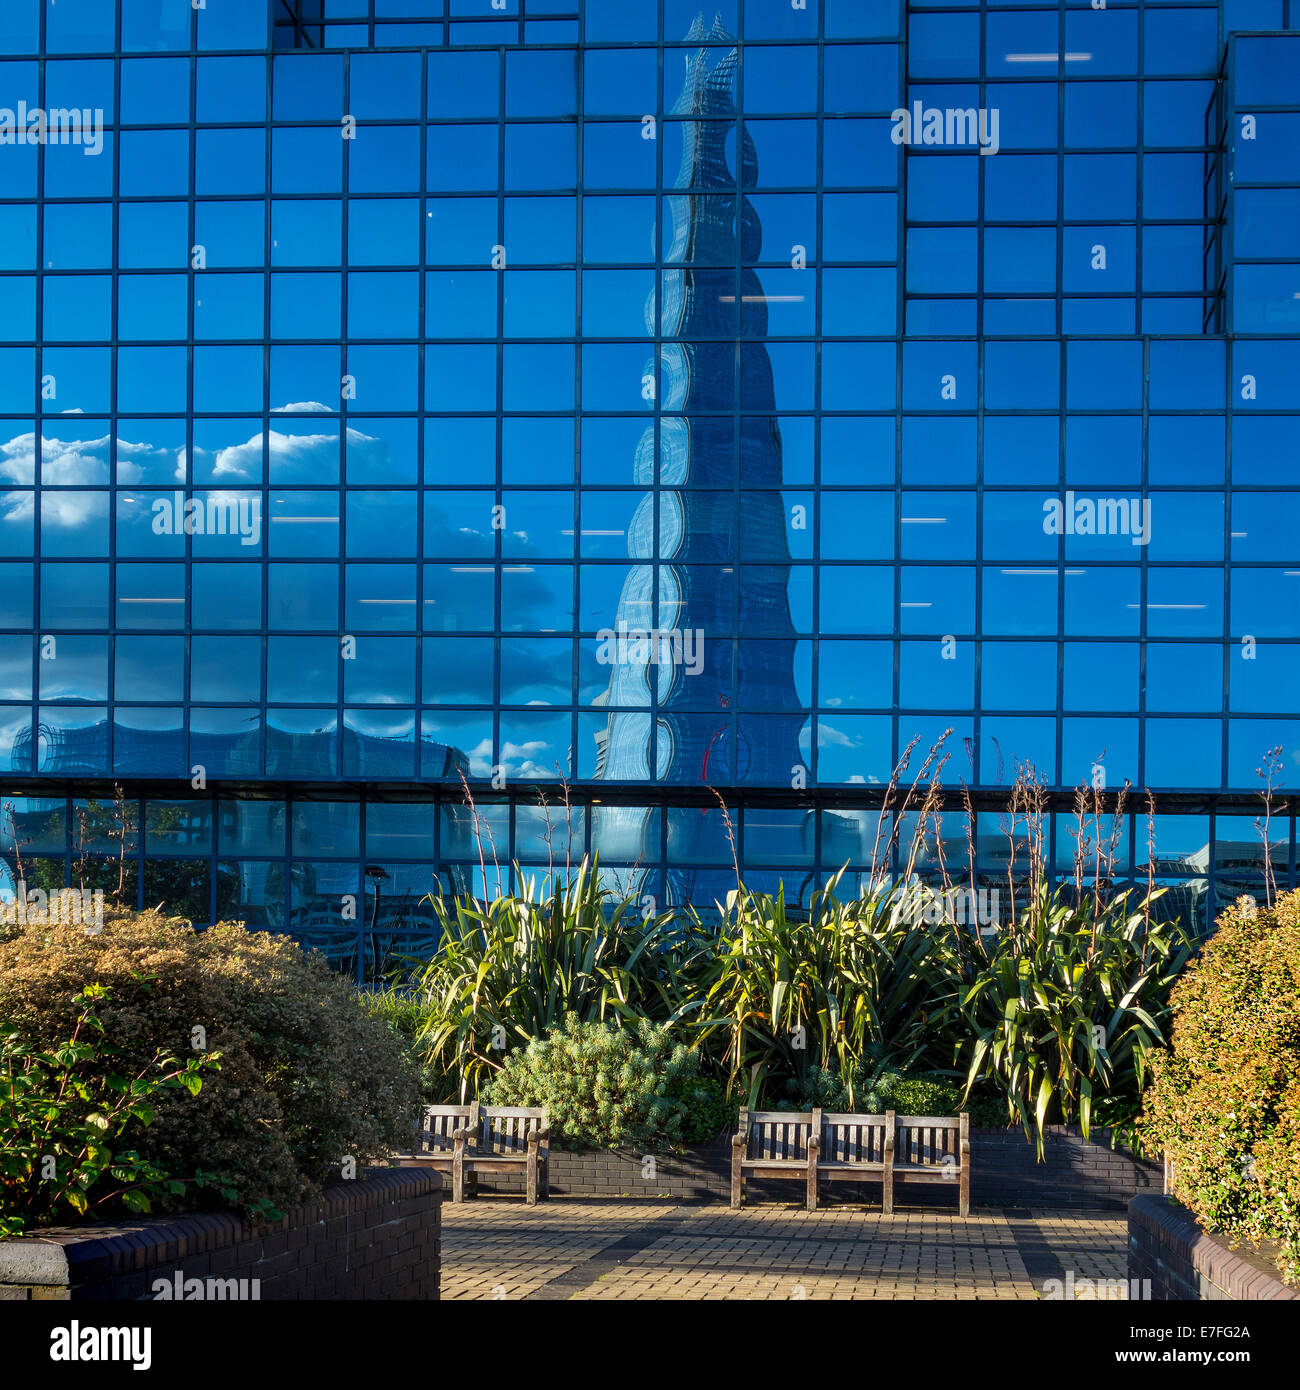 El Shard se refleja en las ventanas de las oficinas de Londres Foto de stock